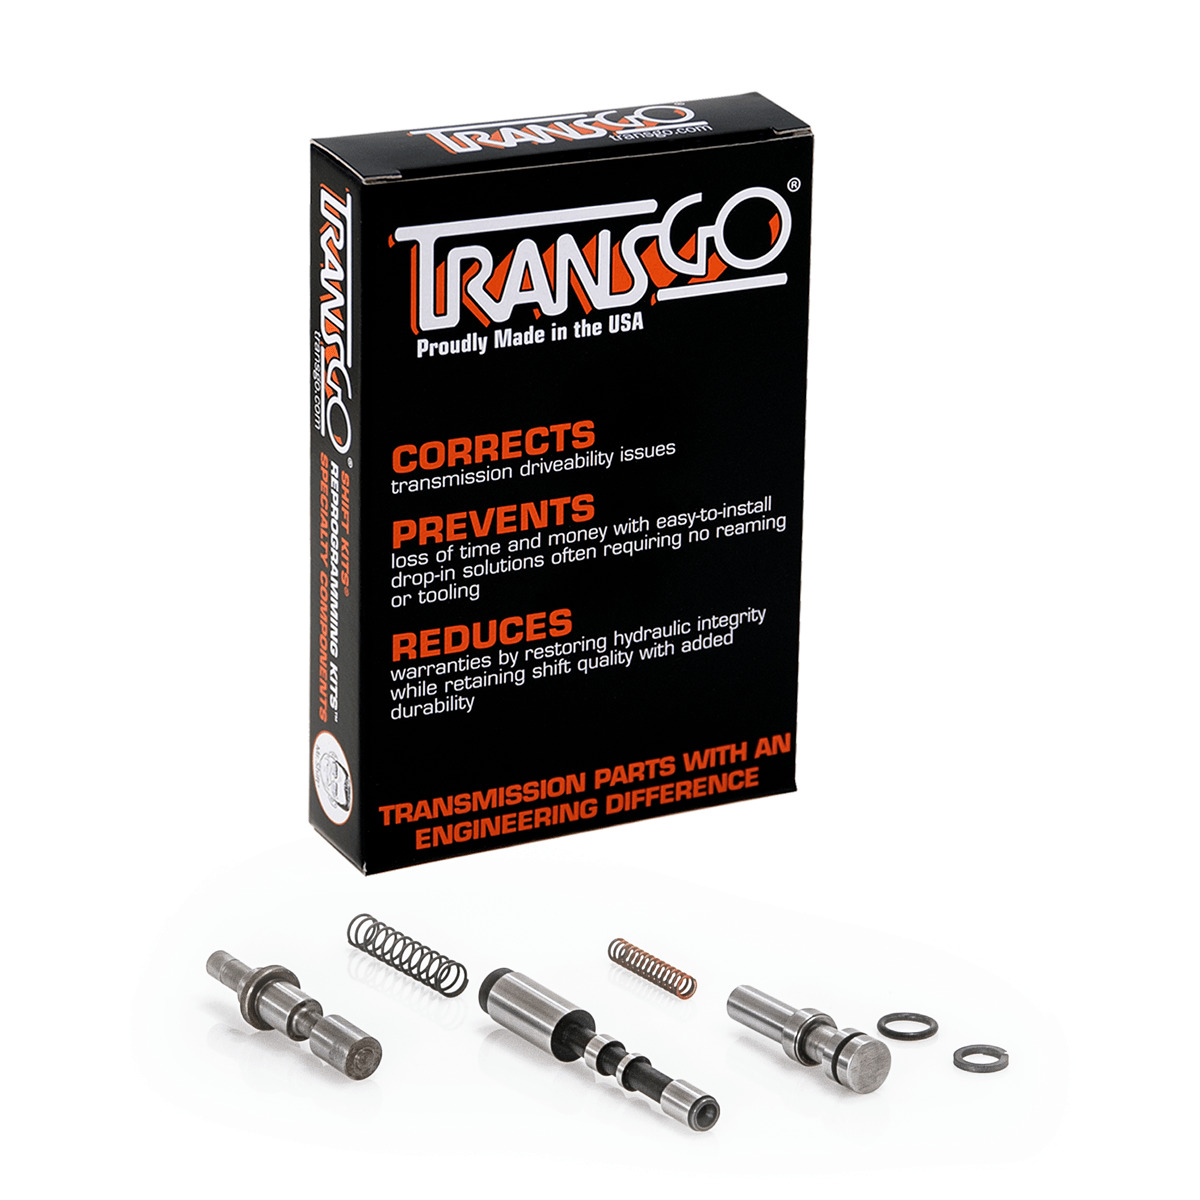 Transgo Shift Kit for GM 6T70, 6T75, 6T80 GEN2 2013-ON  (SK6T70-G2)*